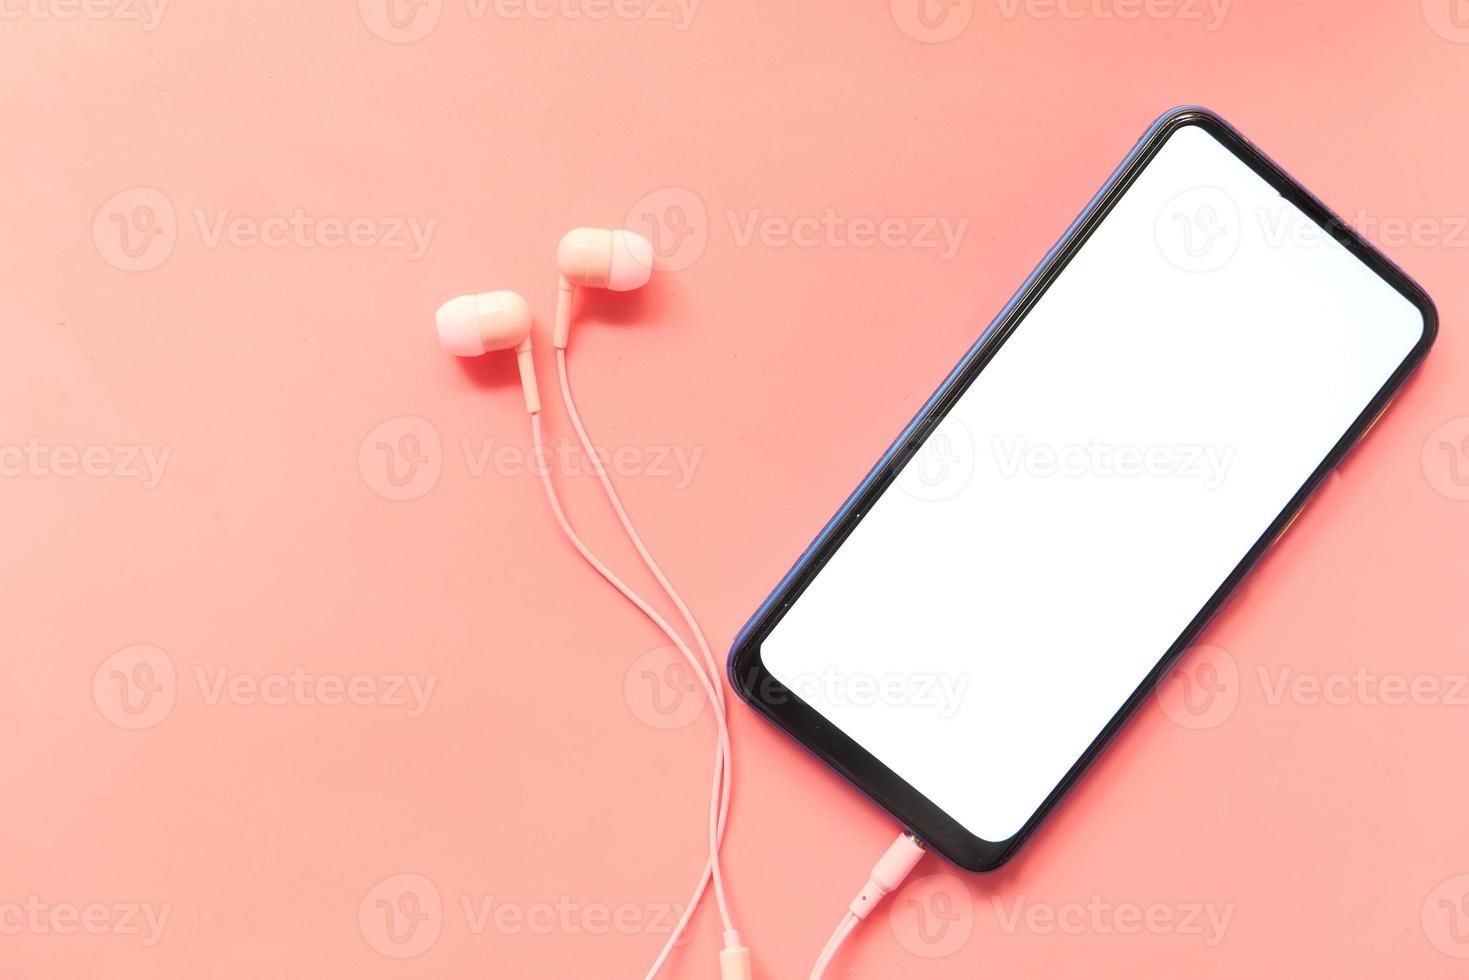 slimme telefoon met leeg scherm en oordopjes op roze achtergrond foto